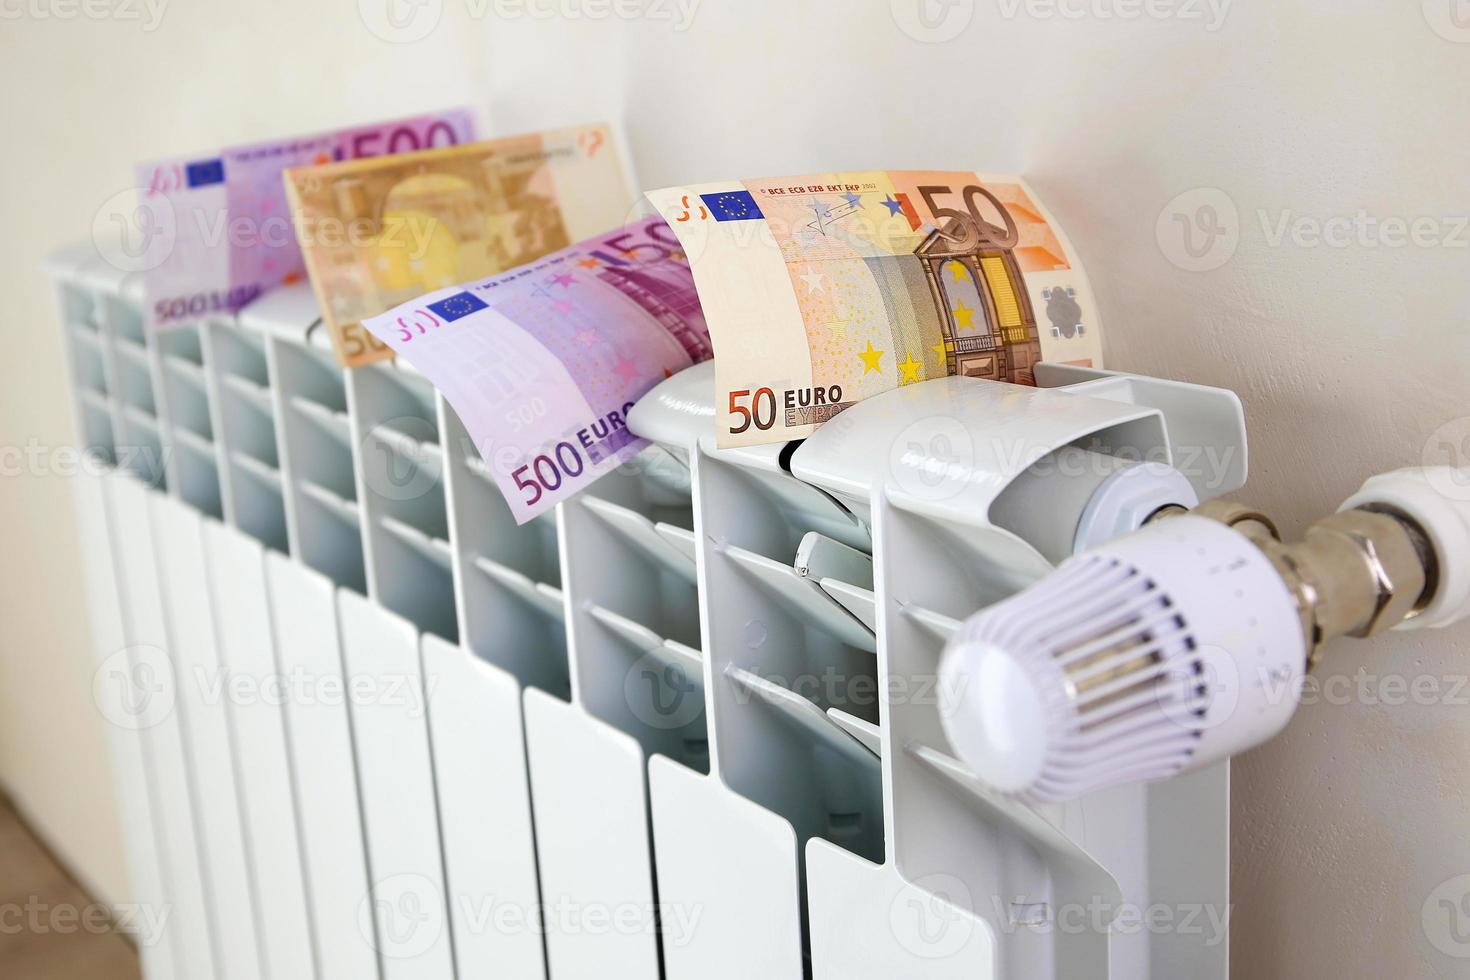 radiateur et argent. le concept de paiement pour le chauffage. photo